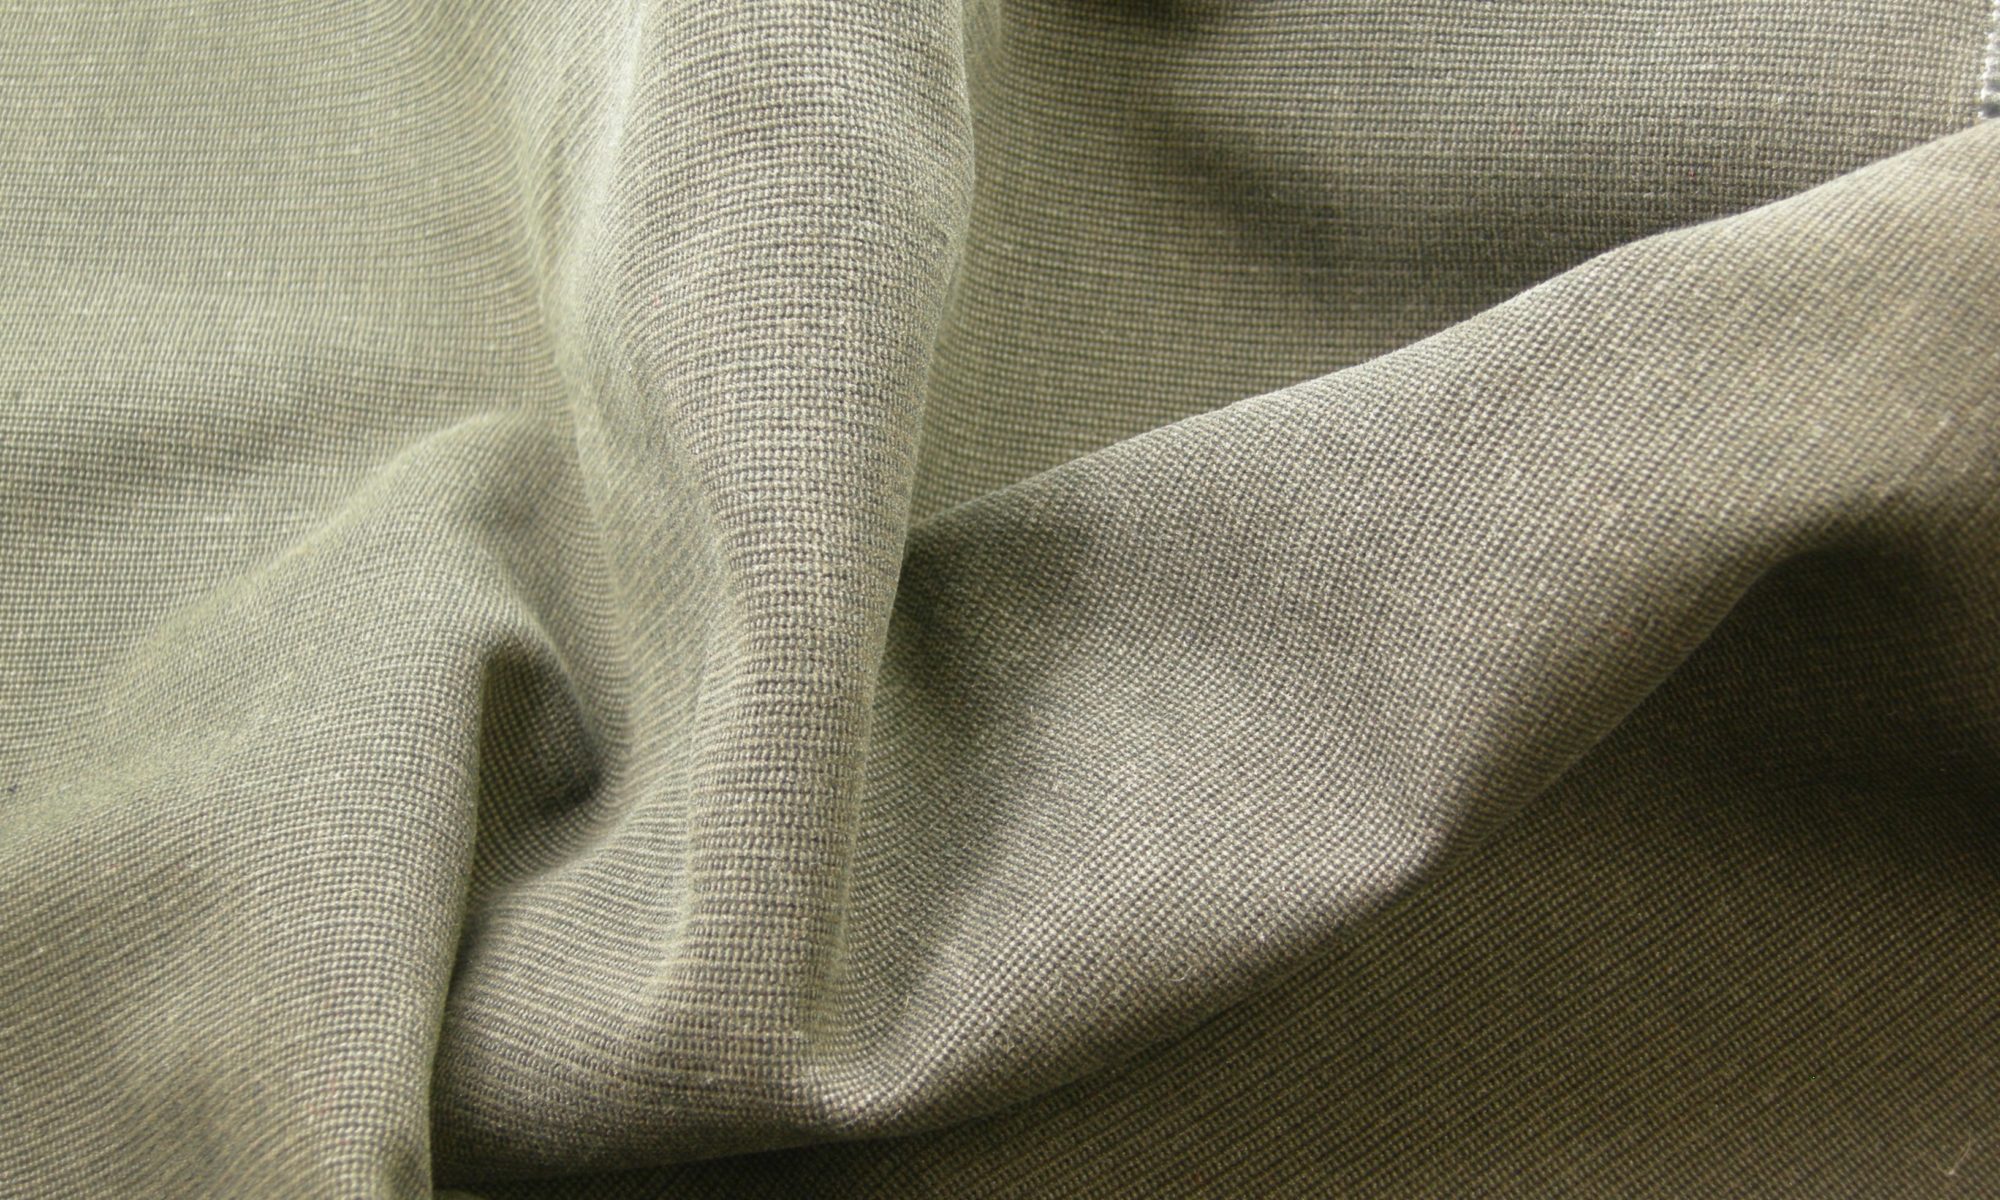 ART 7193 glen plaid pilor cotton coat jacket fabric WIDTH cm150 WEIGHT gr450 COMPOSITION 100 cotton - 300mts